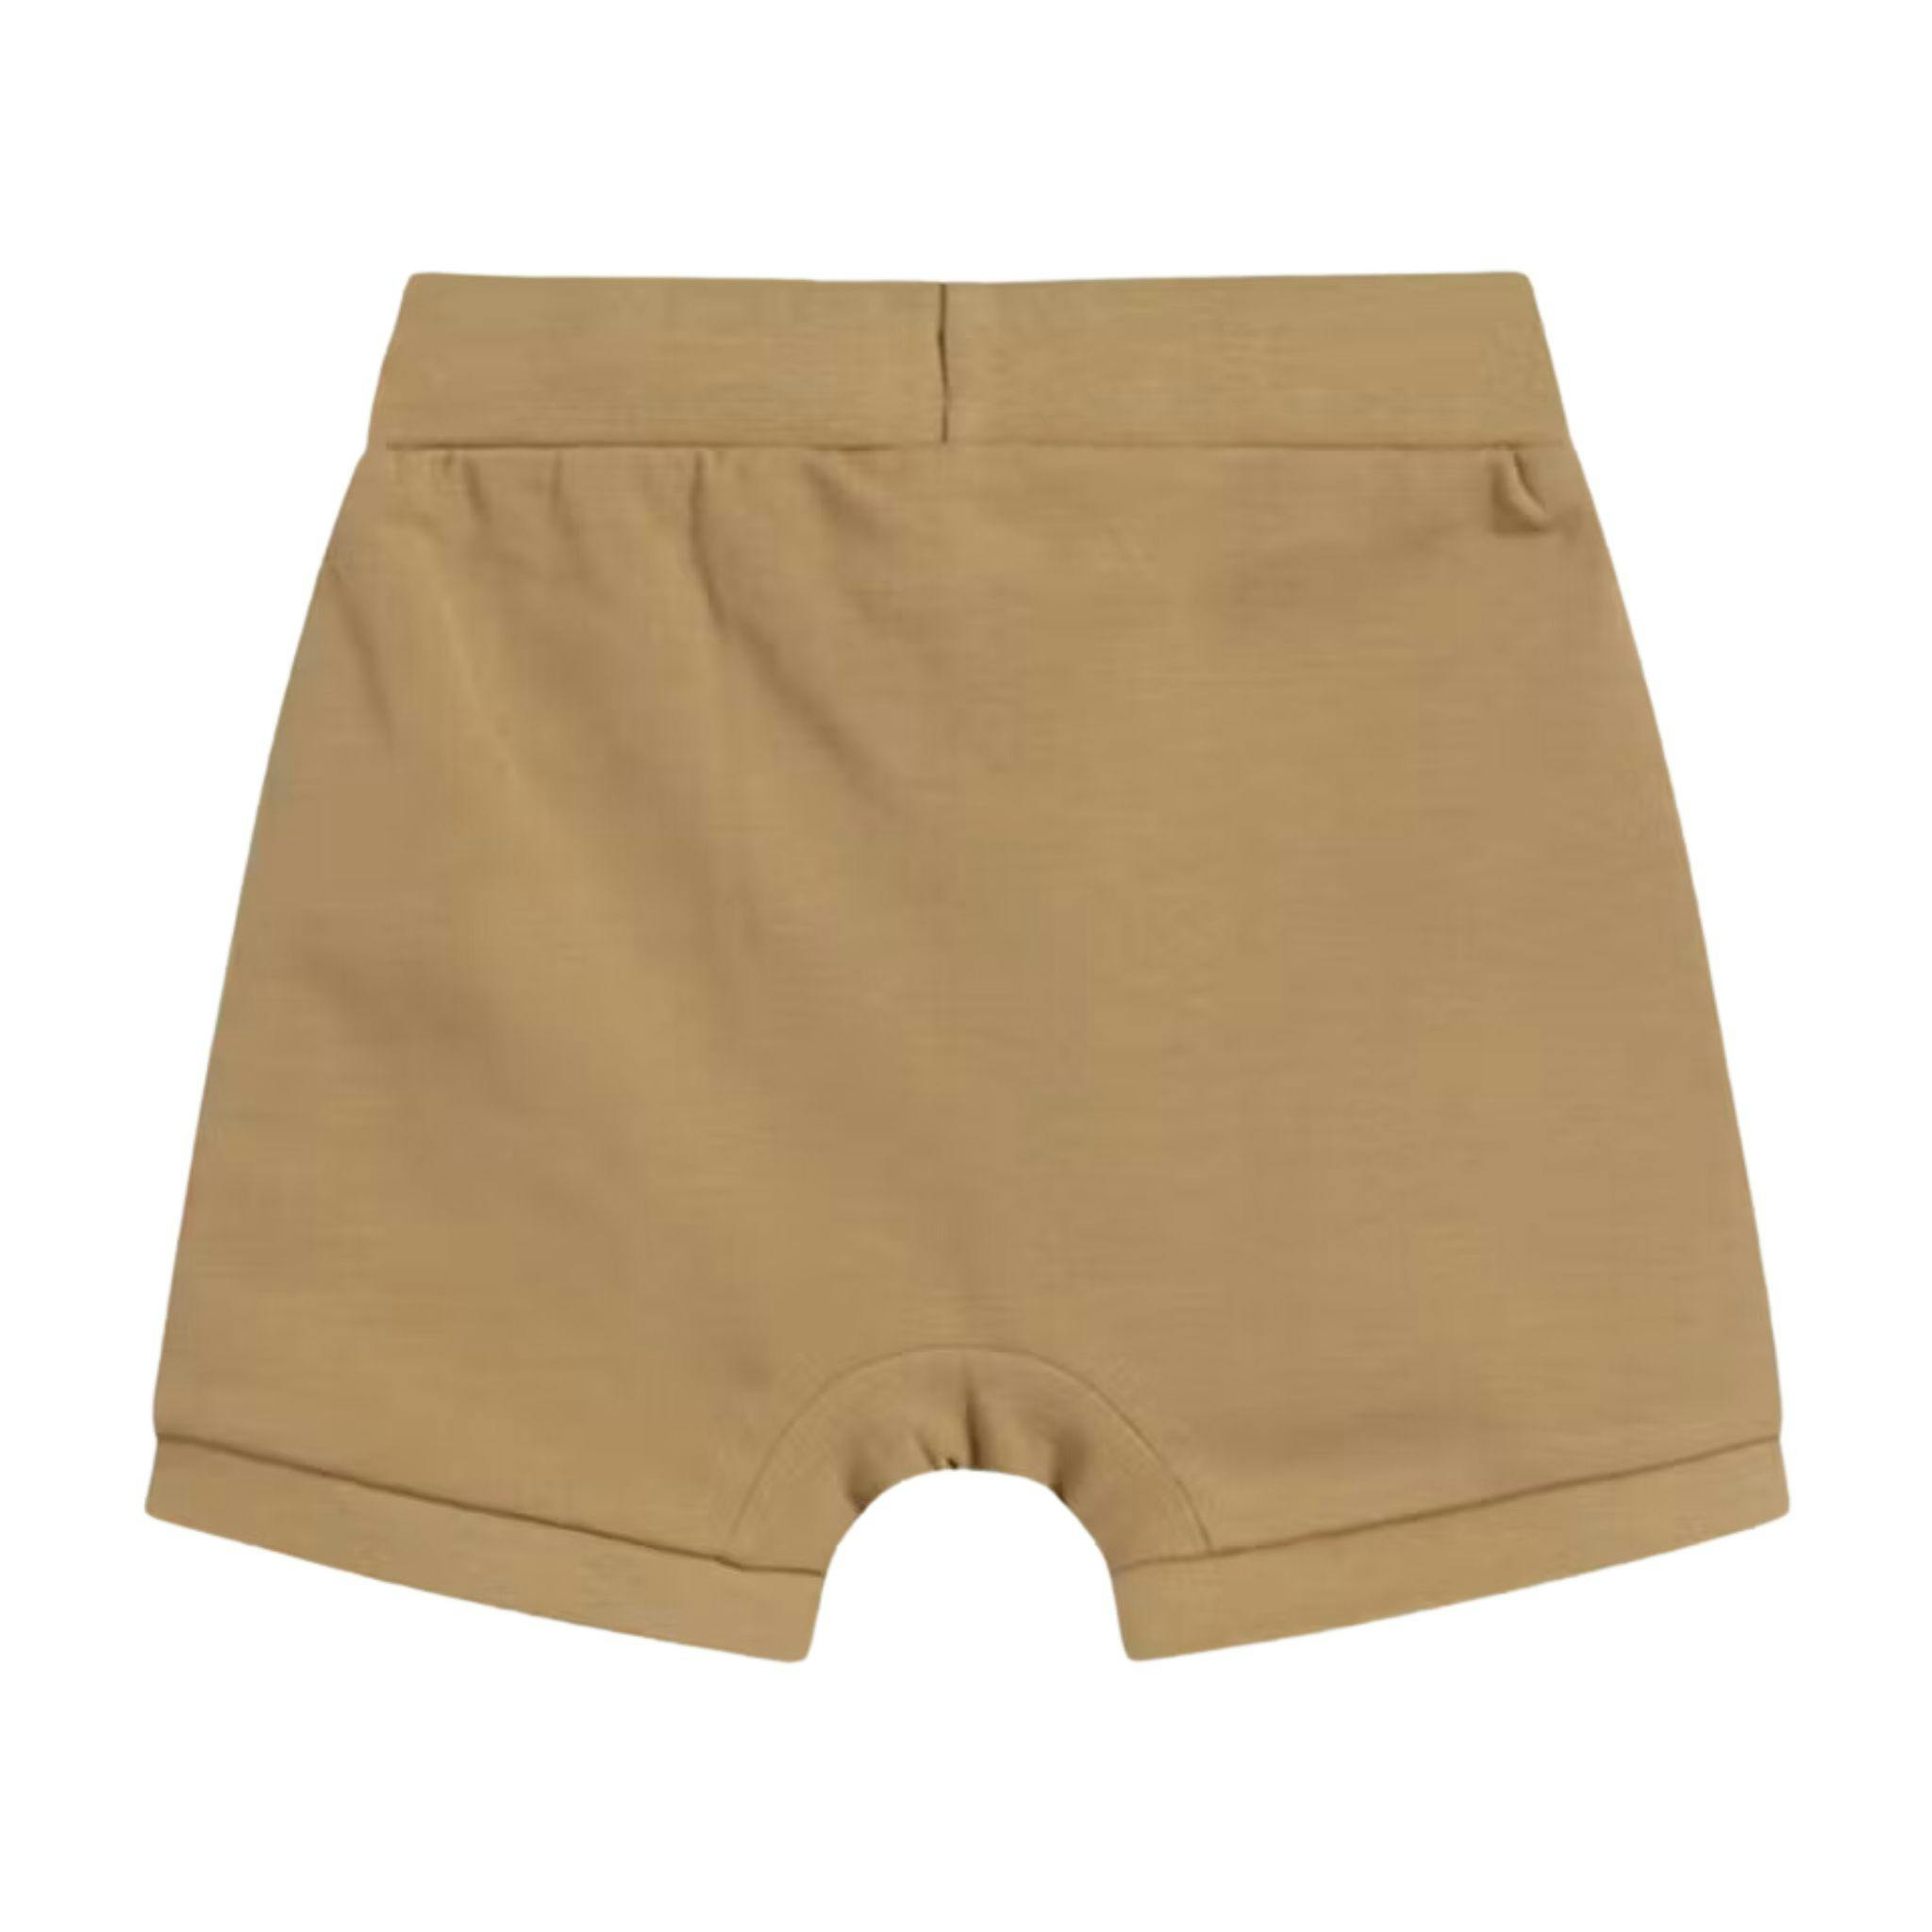 Sköna beiga shorts till baby med resår och knytband i midjan från Hust & Claire.